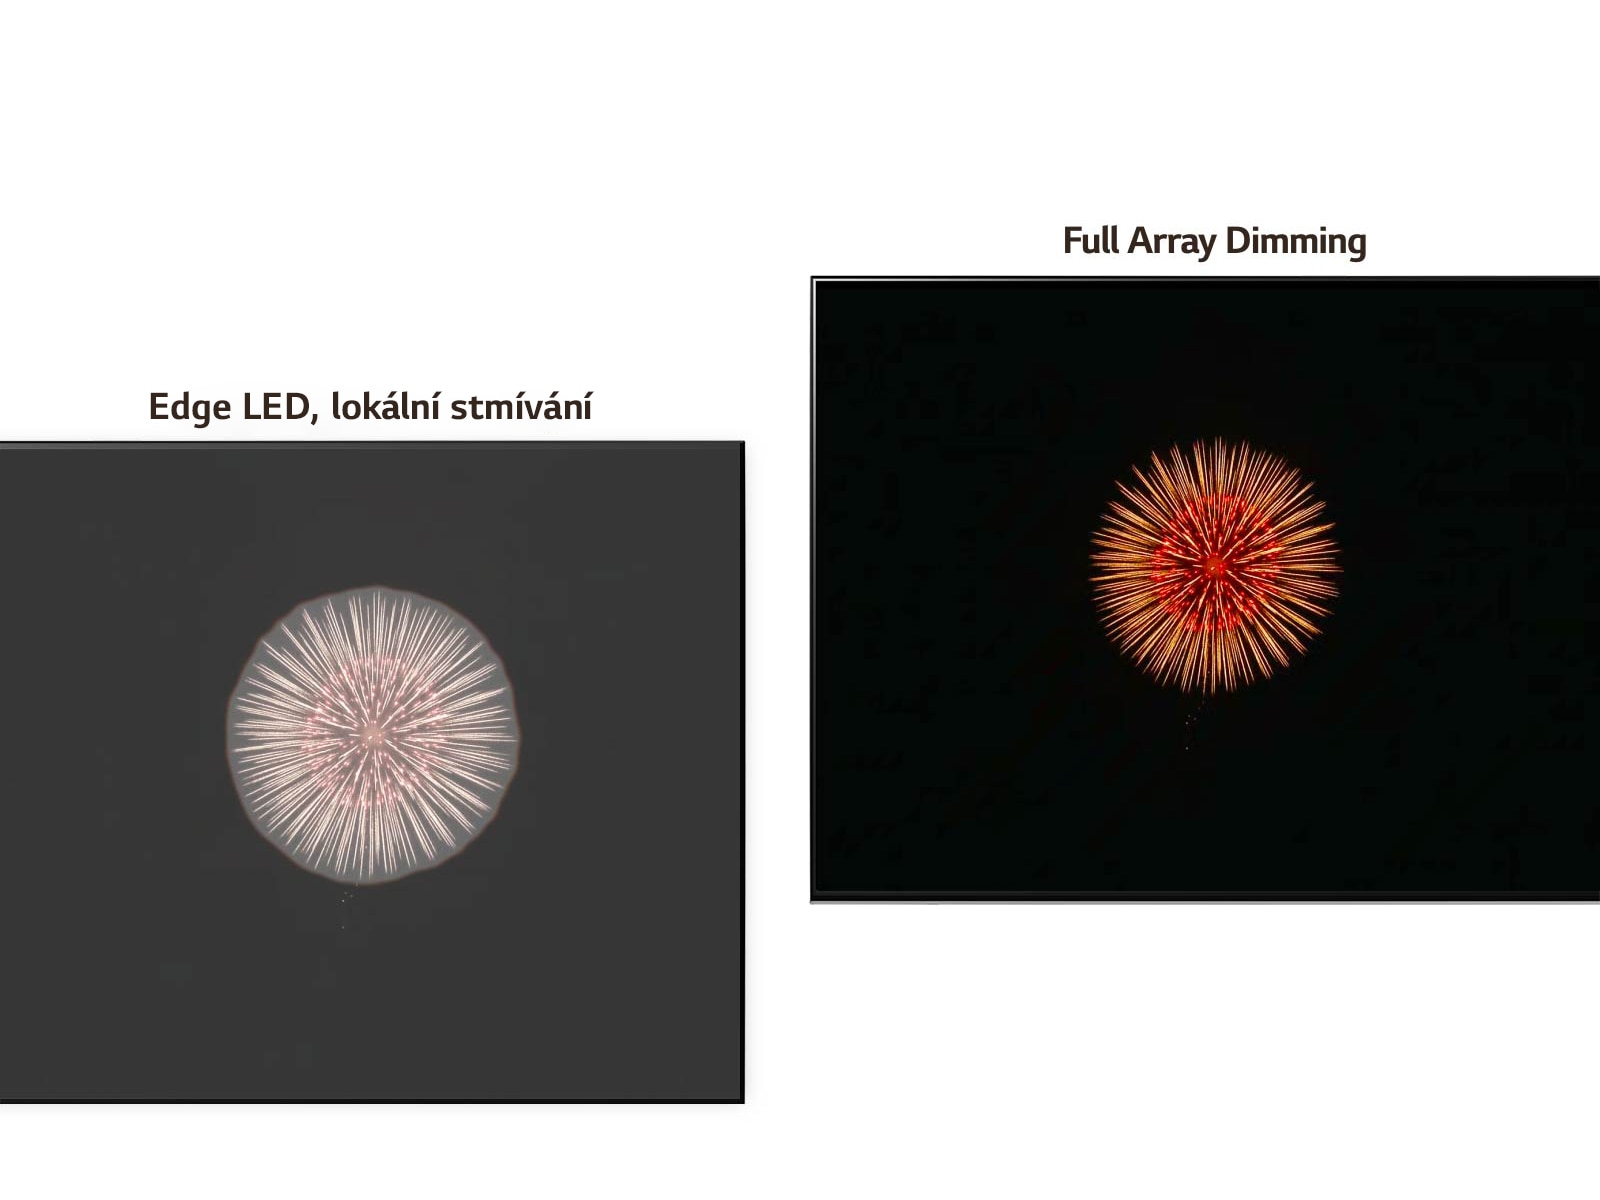 Srovnání technologie Edge LED s technologií lokálního stmívání vlevo s haló efektem a technologie Full Array Dimming vpravo s hlubšími odstíny černé a méně výrazným haló efektem (přehrát video)